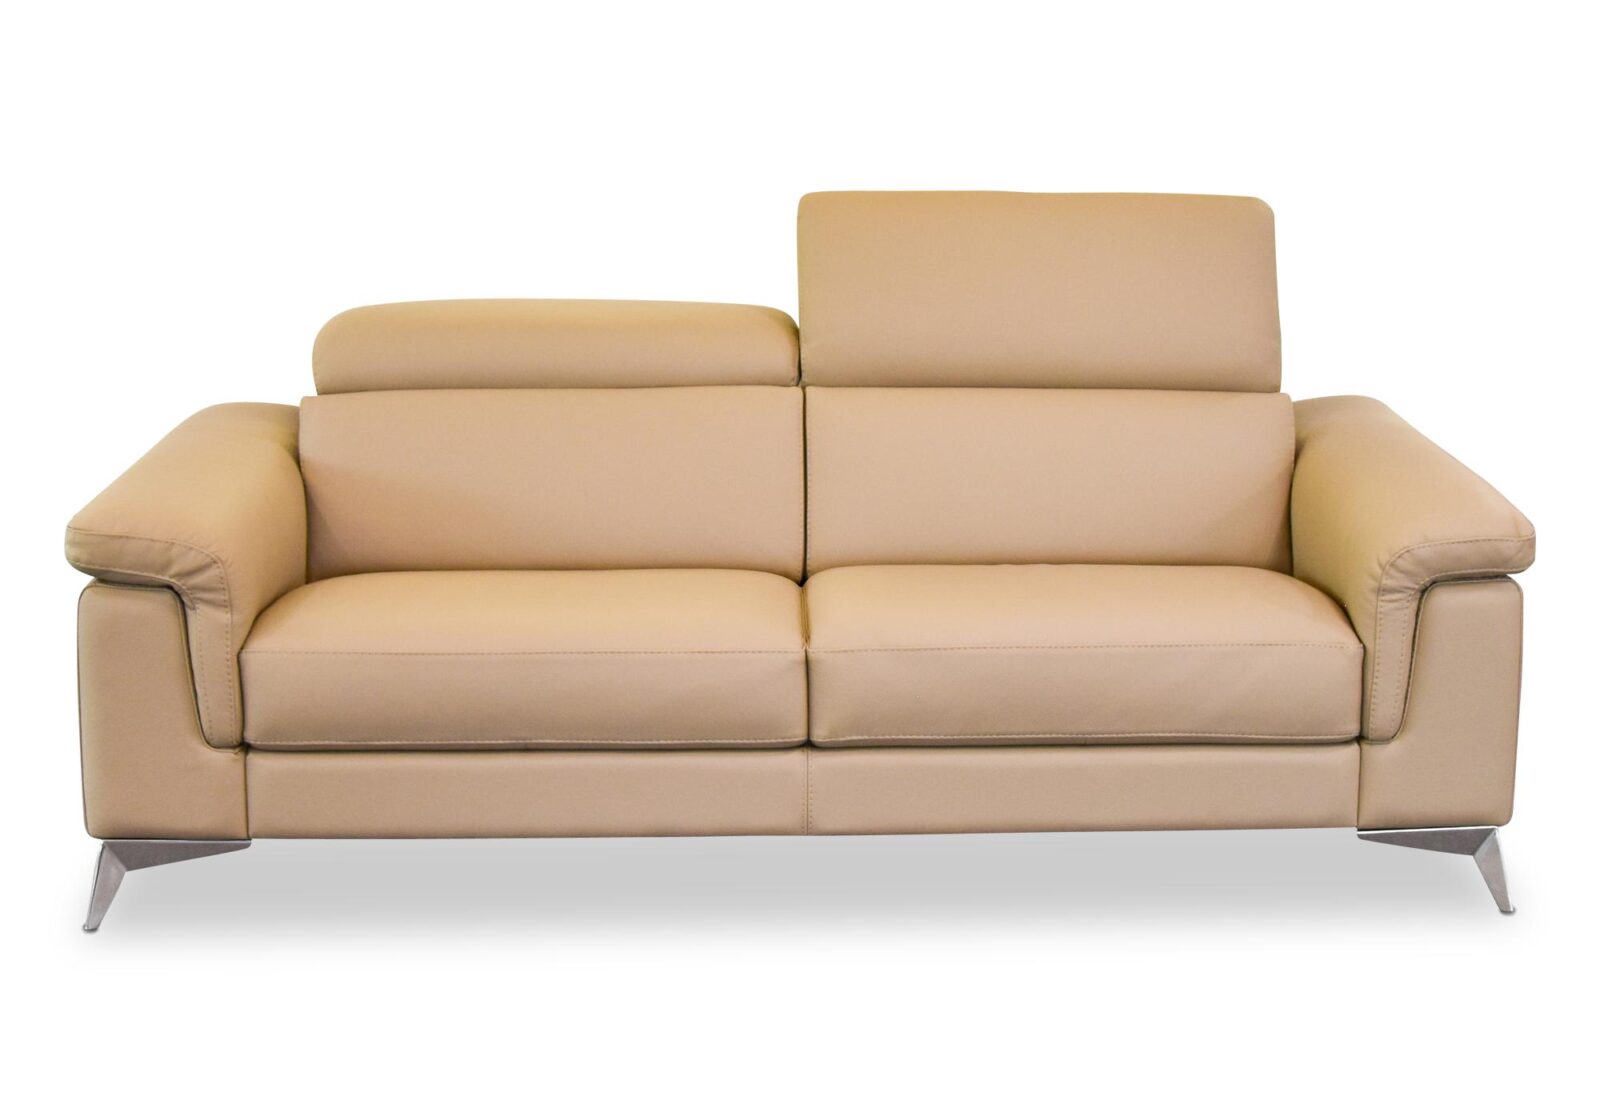 2.5er Sofa Ever mit Touch-Bedienung. Bezug: Leder. Farbe: Biscotto. Erhältlich bei Möbel Gallati.